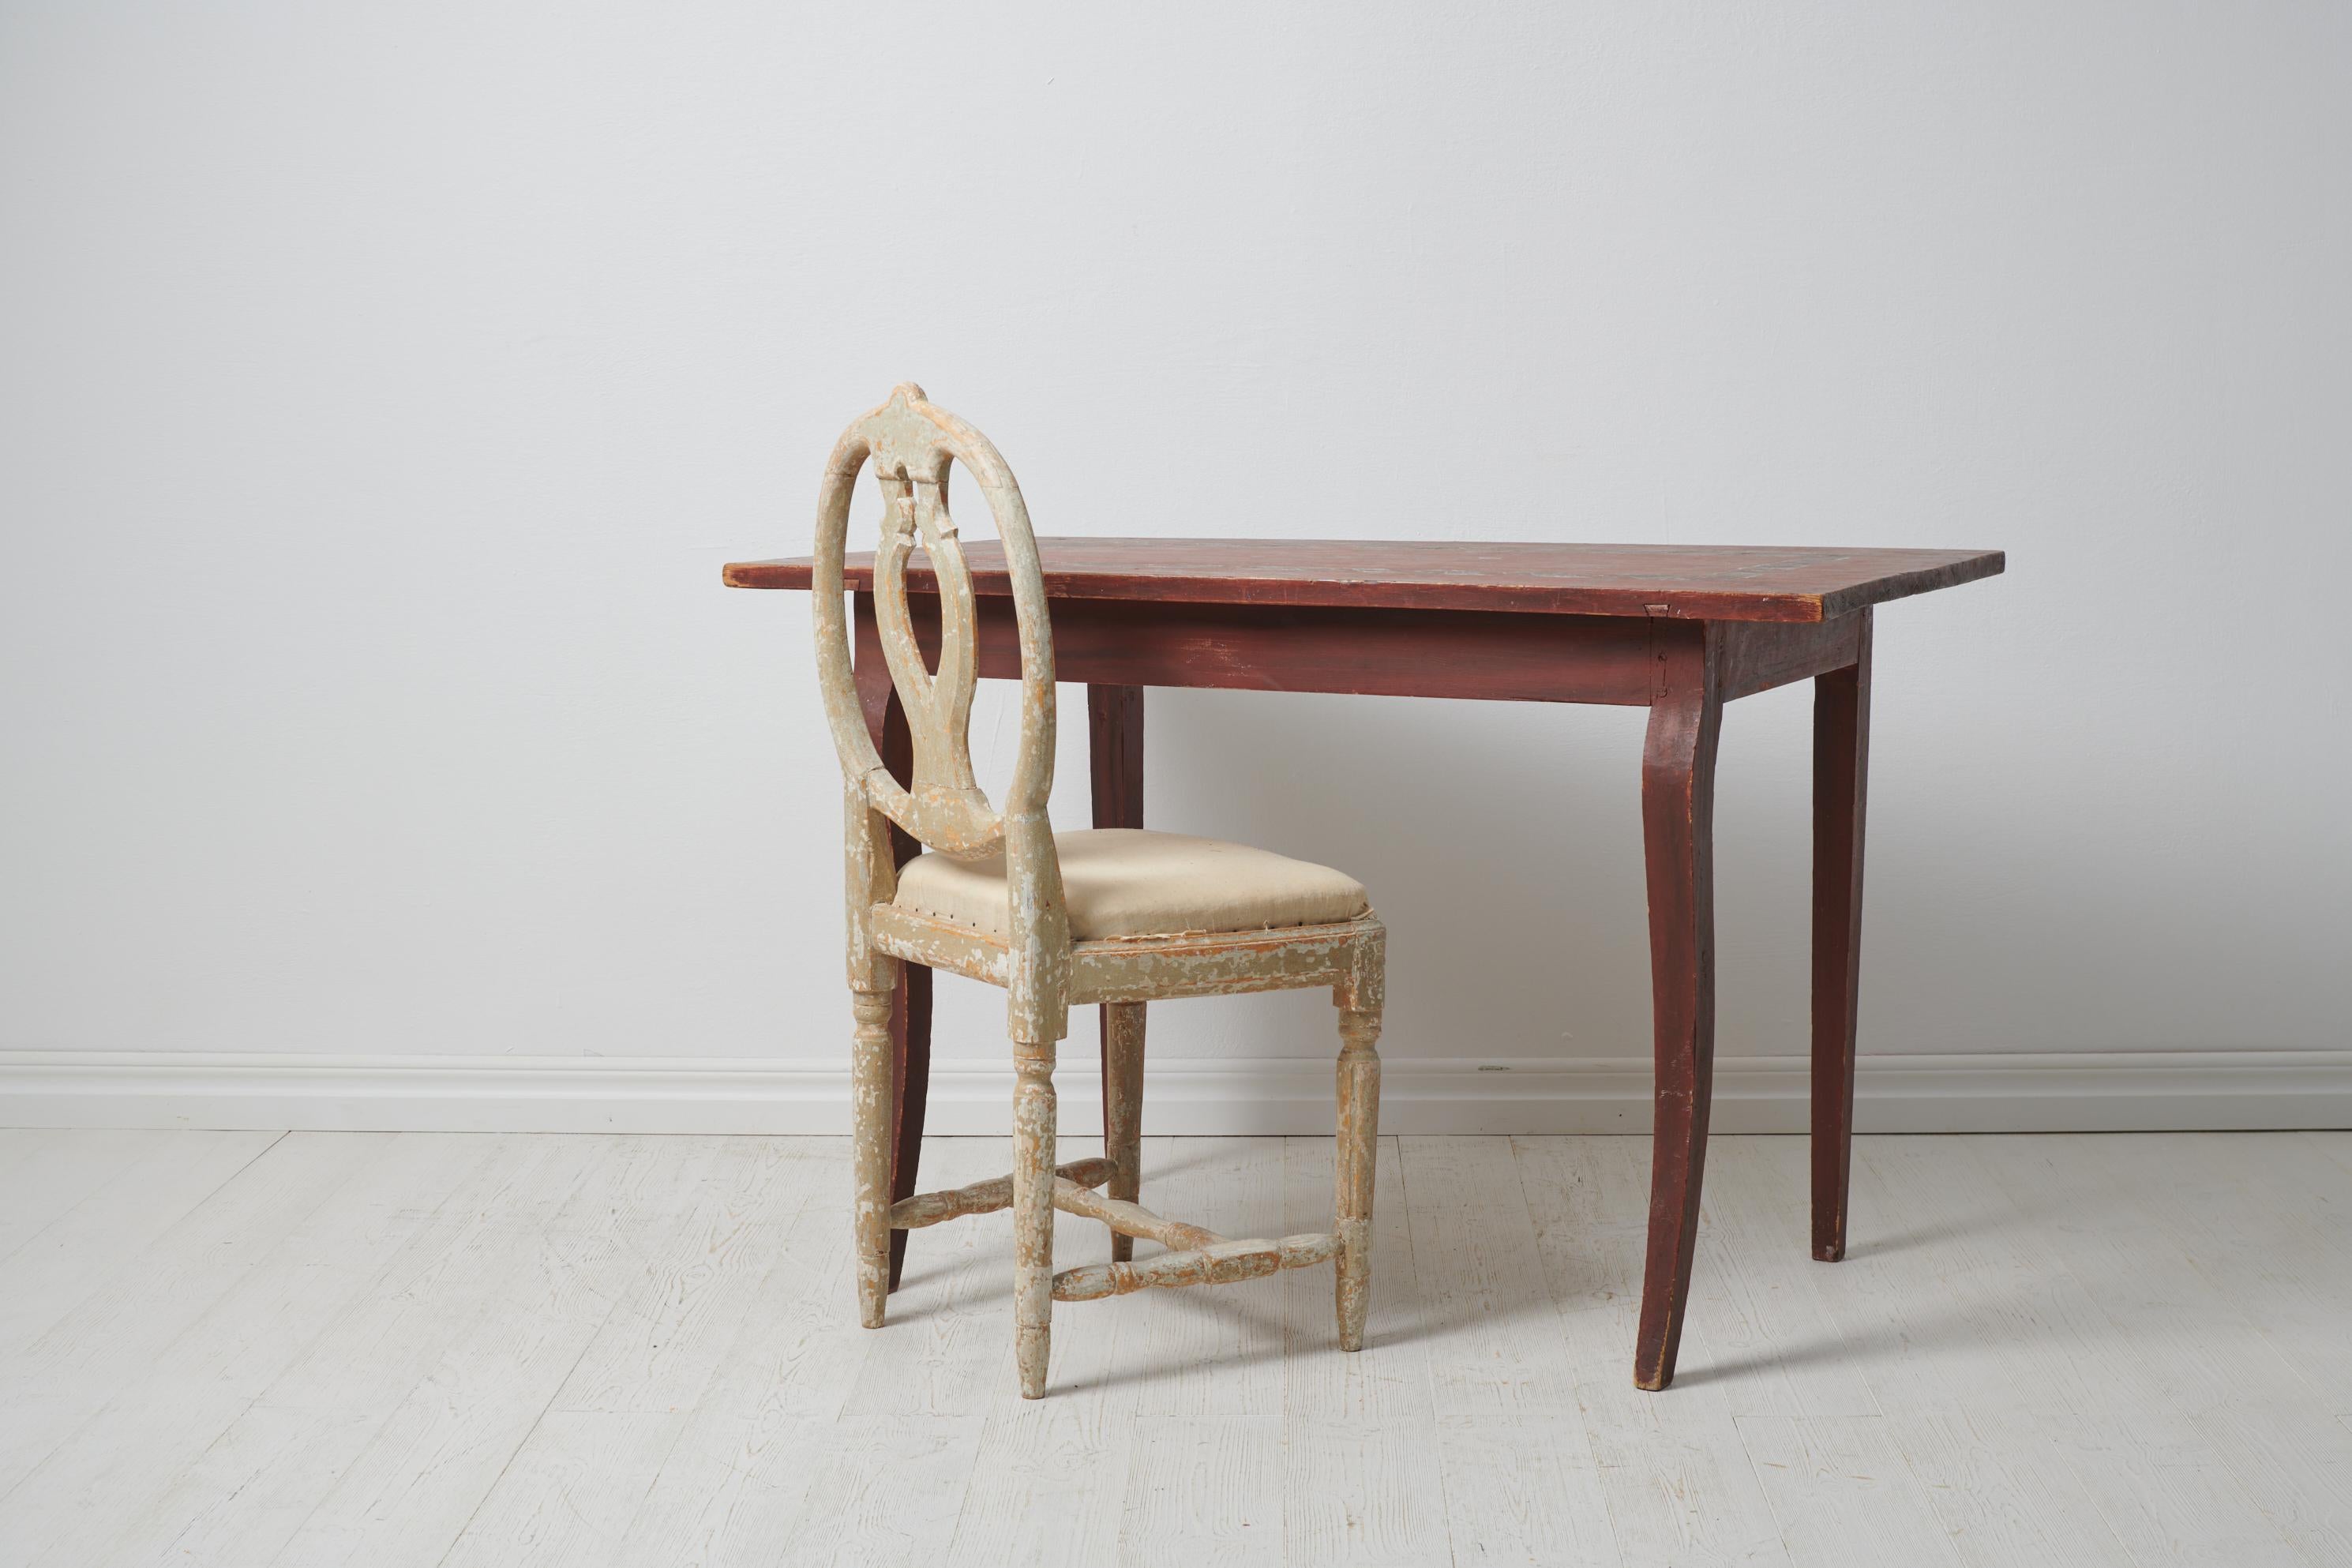 Antiker schwedischer Konsolentisch aus den 1820er Jahren. Der Tisch ist ein echtes schwedisches Landhausmöbel, handgefertigt aus massiver Kiefer. Der Tisch hat die ursprüngliche, unberührte Farbe mit einer auf die Tischplatte gemalten Zierleiste.